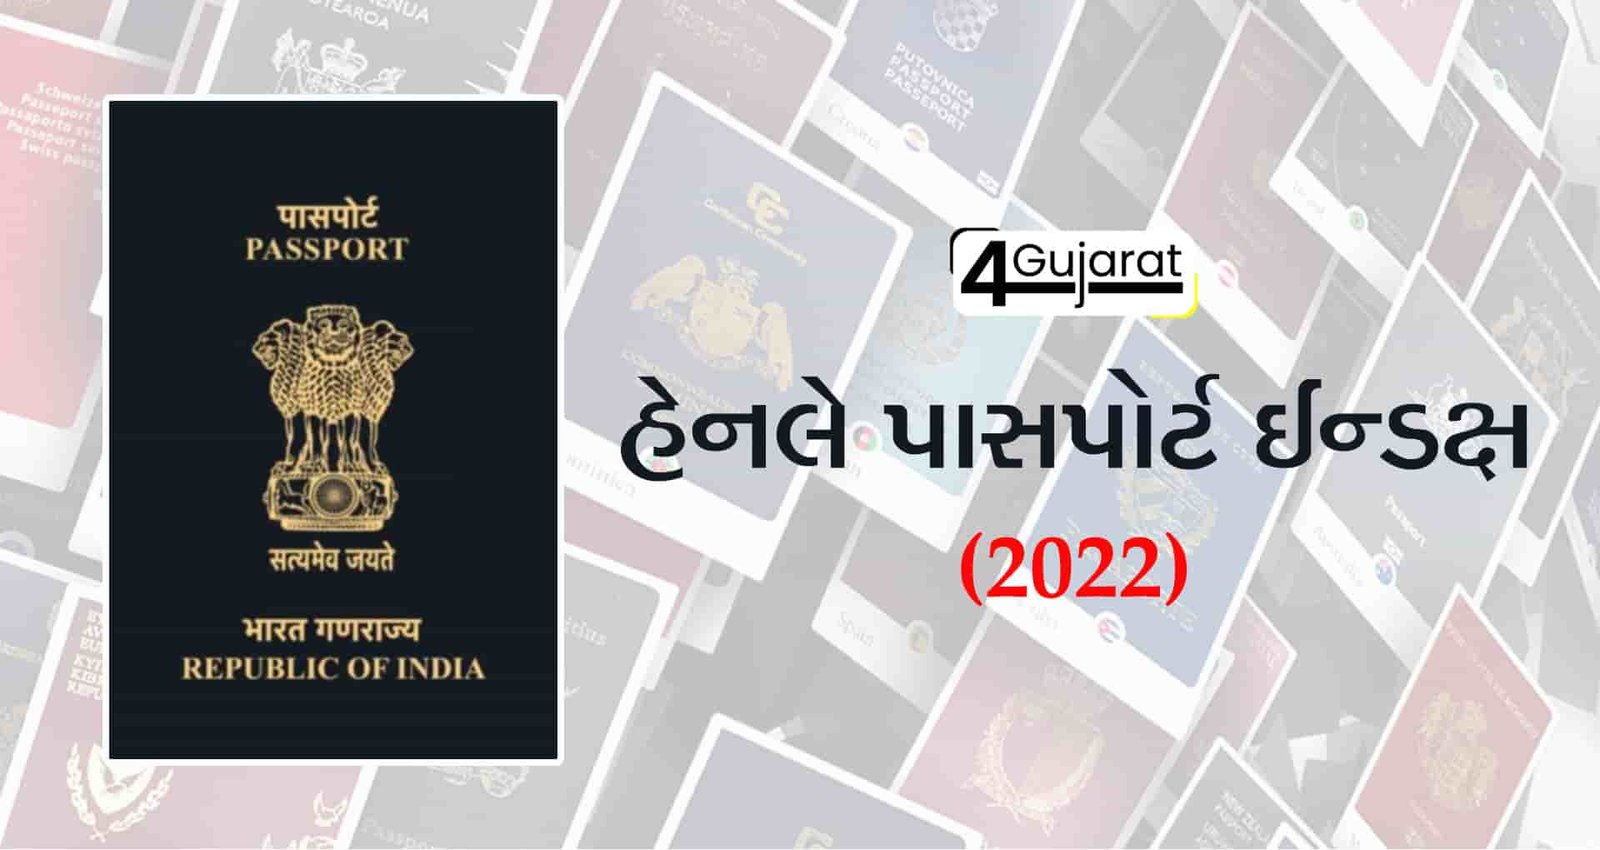 Henley-Passport-Index-2022-in-Gujarati